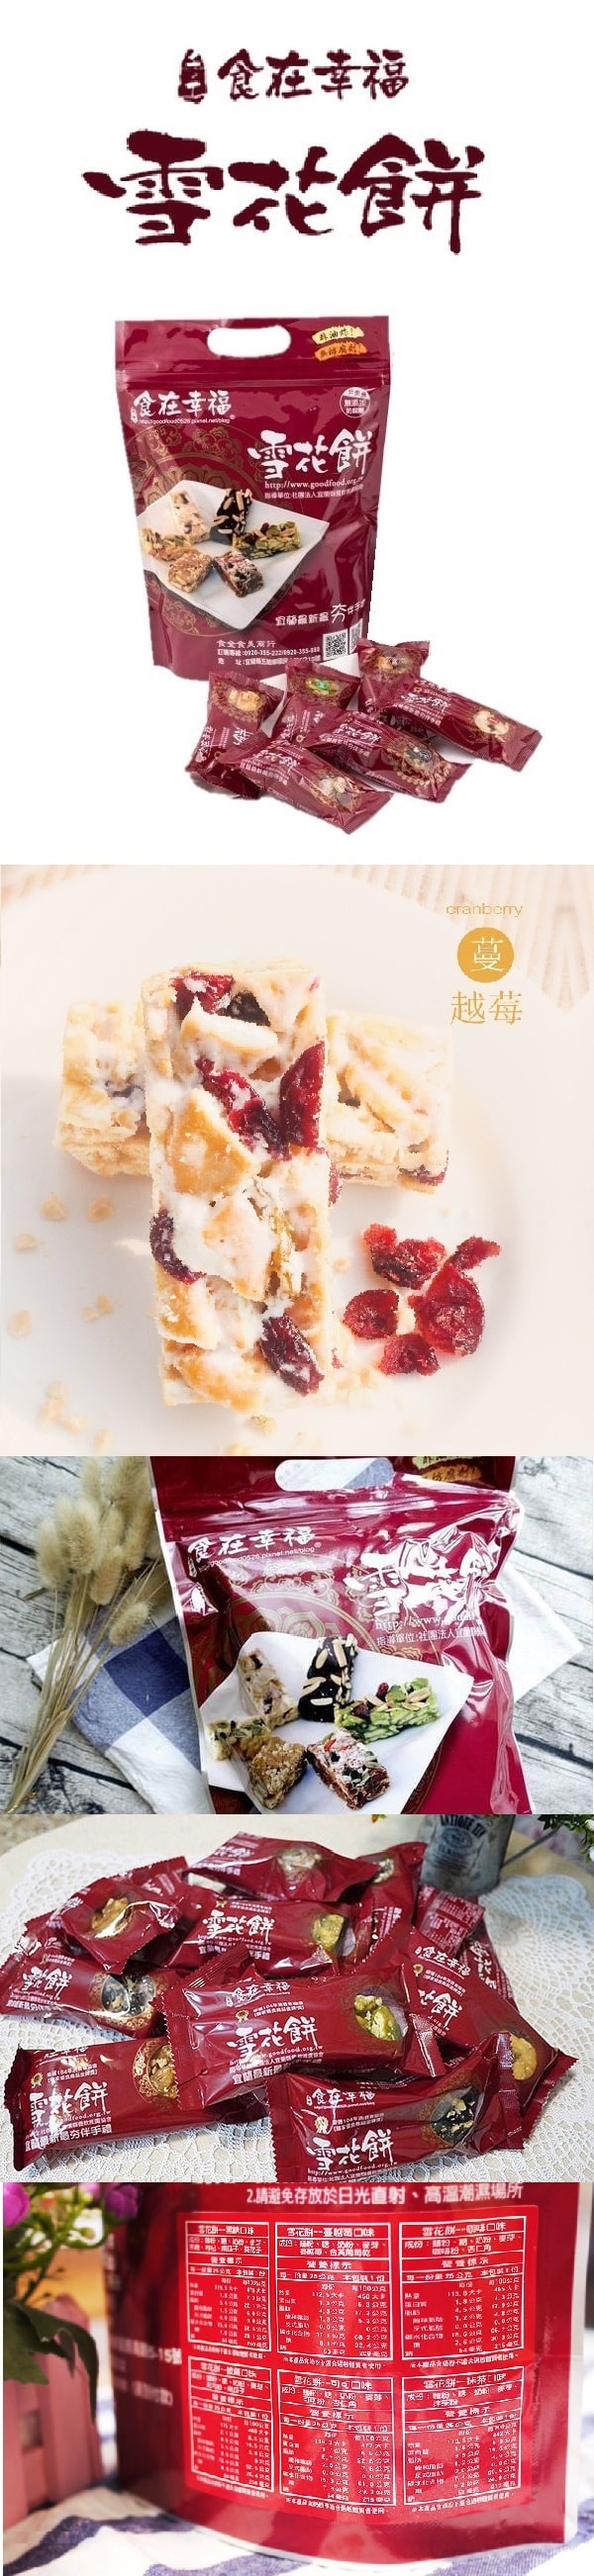 [台湾直邮]食在幸福雪花饼 宜兰团购美食 雪花饼蔓越莓口味 375g